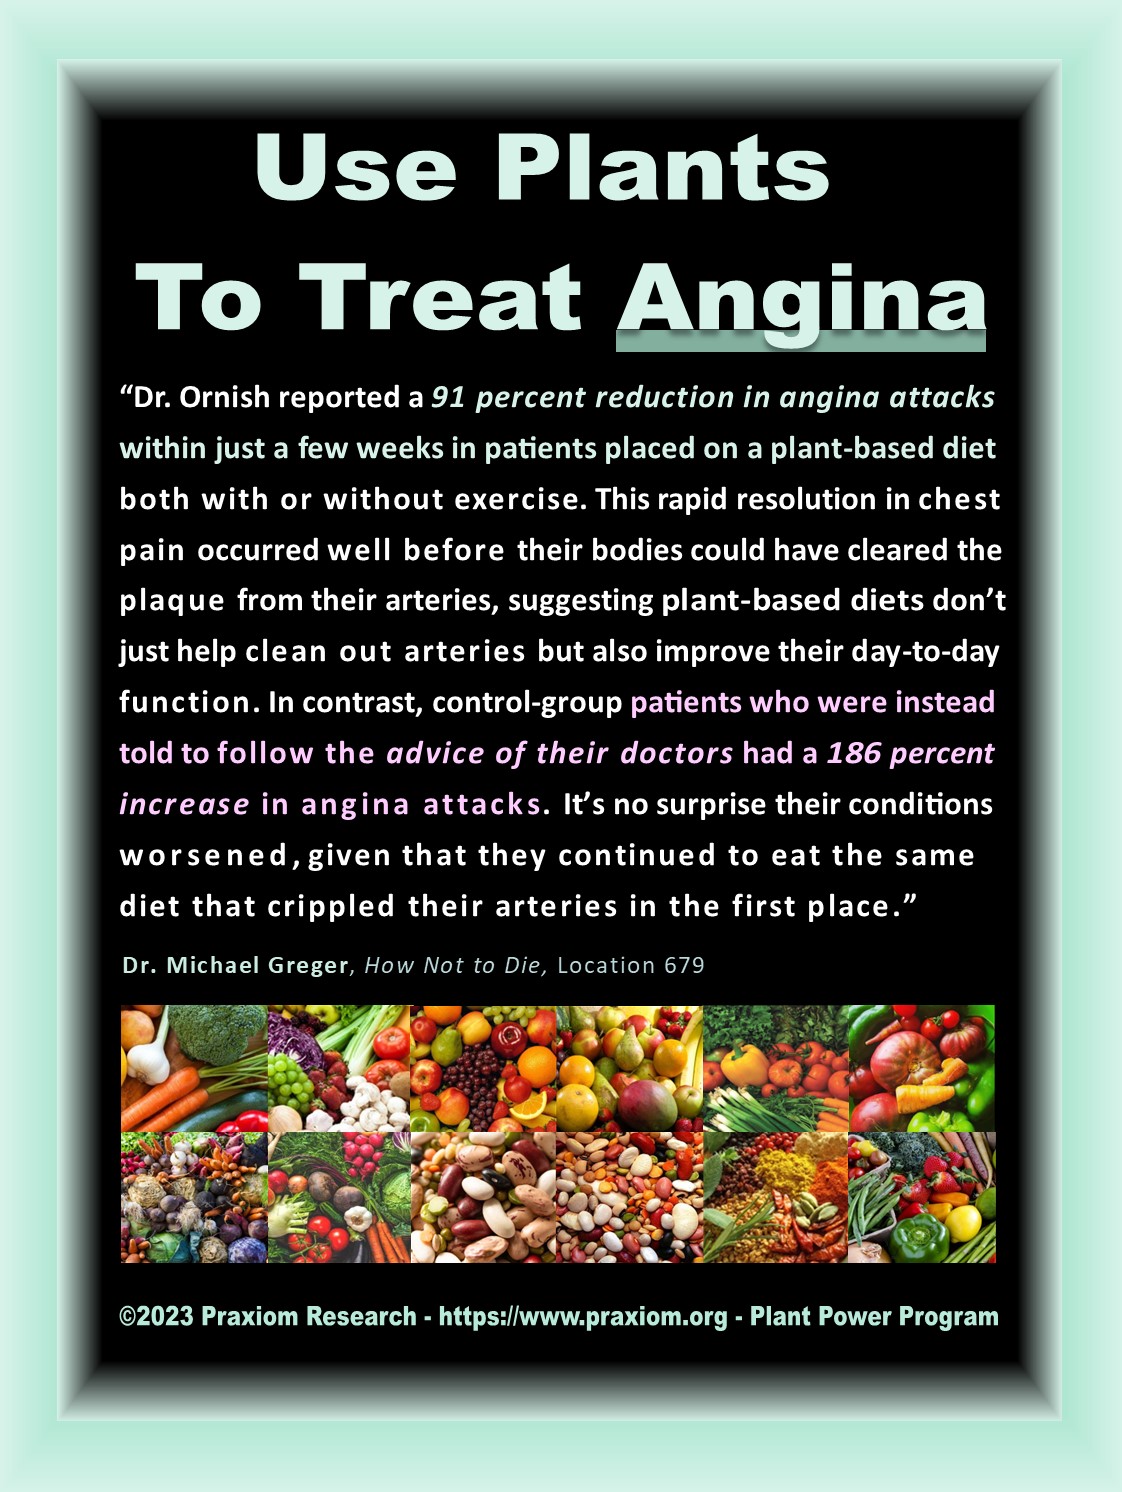 Use Plants to Treat Angina